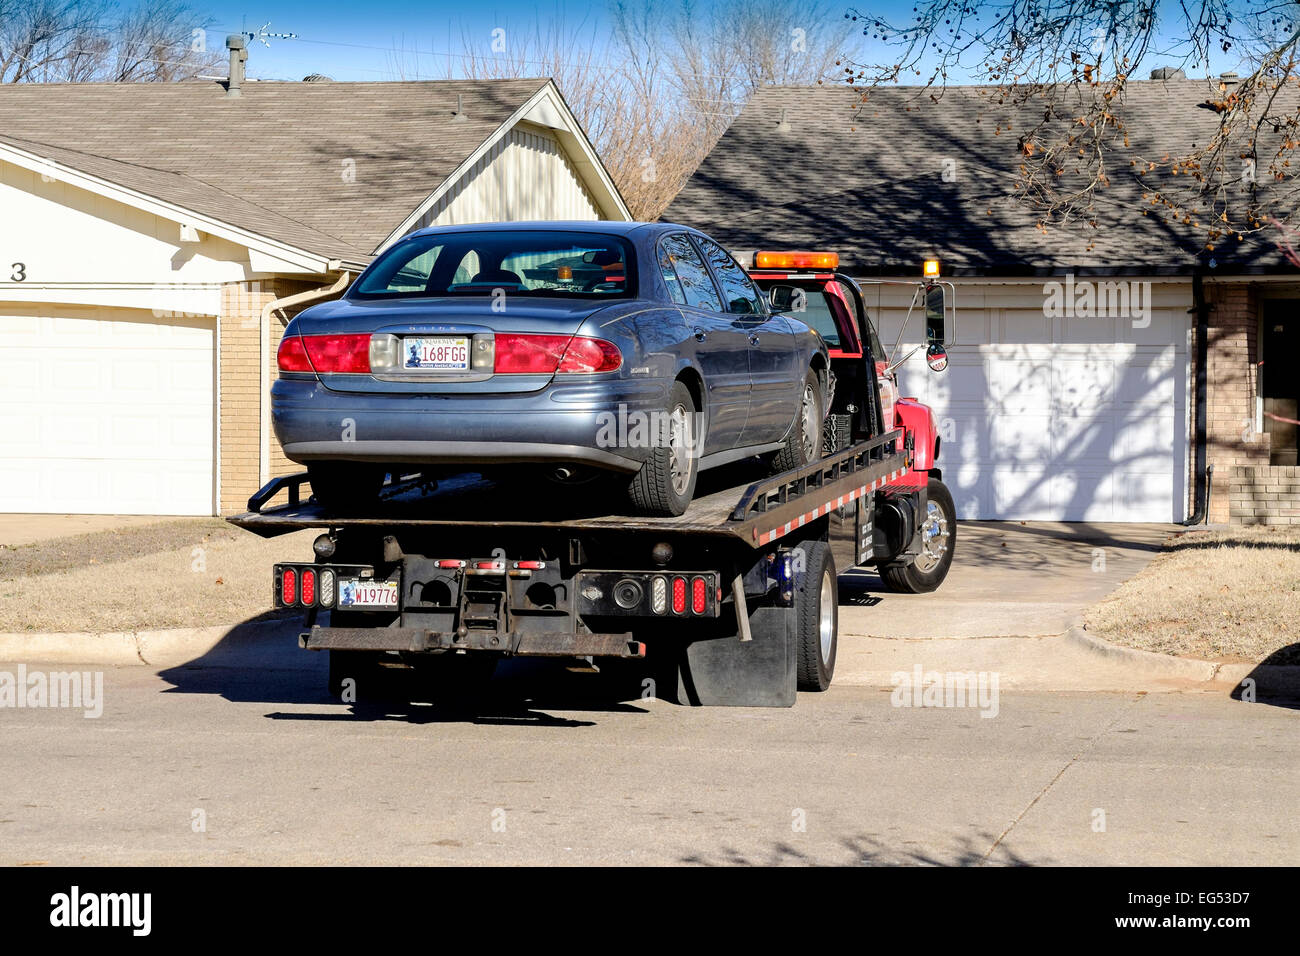 Un vieux 2000 Buick Lesabre ayant besoin de réparations est chargé vers le haut sur une dépanneuse lourde pour le transport d'un mécanicien. Oklahoma City, Oklahoma, USA Banque D'Images